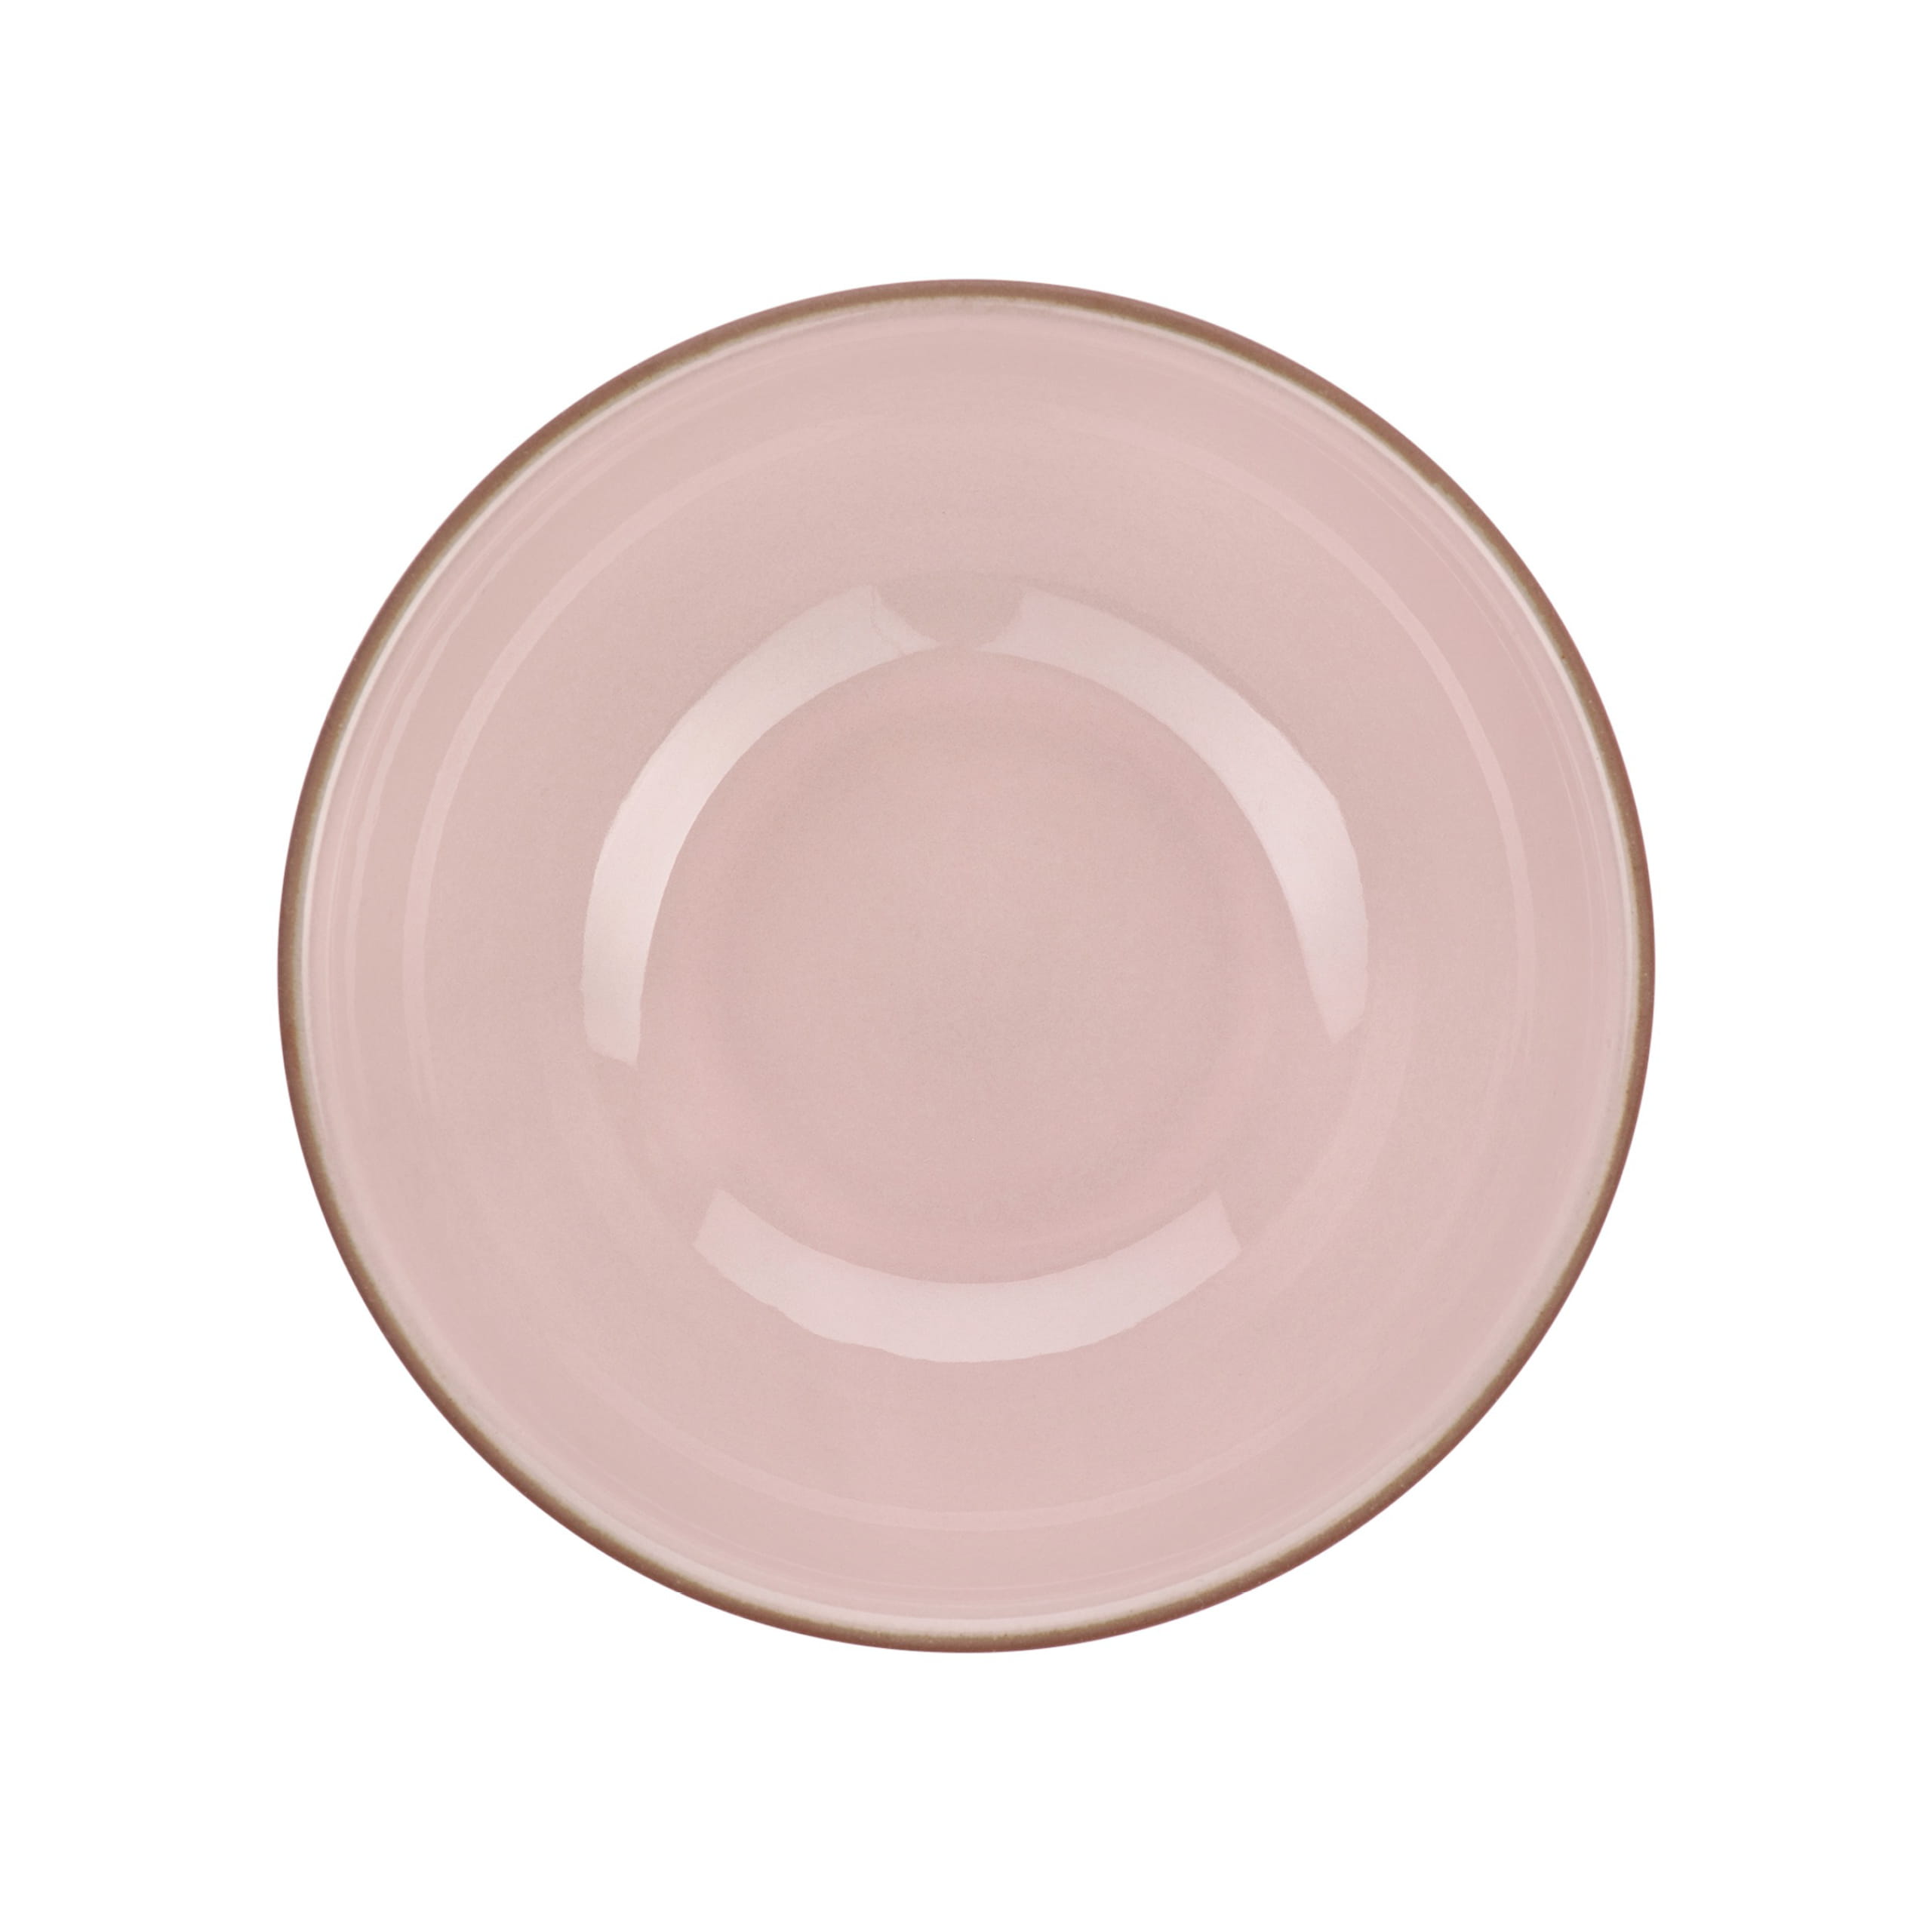 SIENNA Schale 12 x 5,5 cm, Pink, Keramik